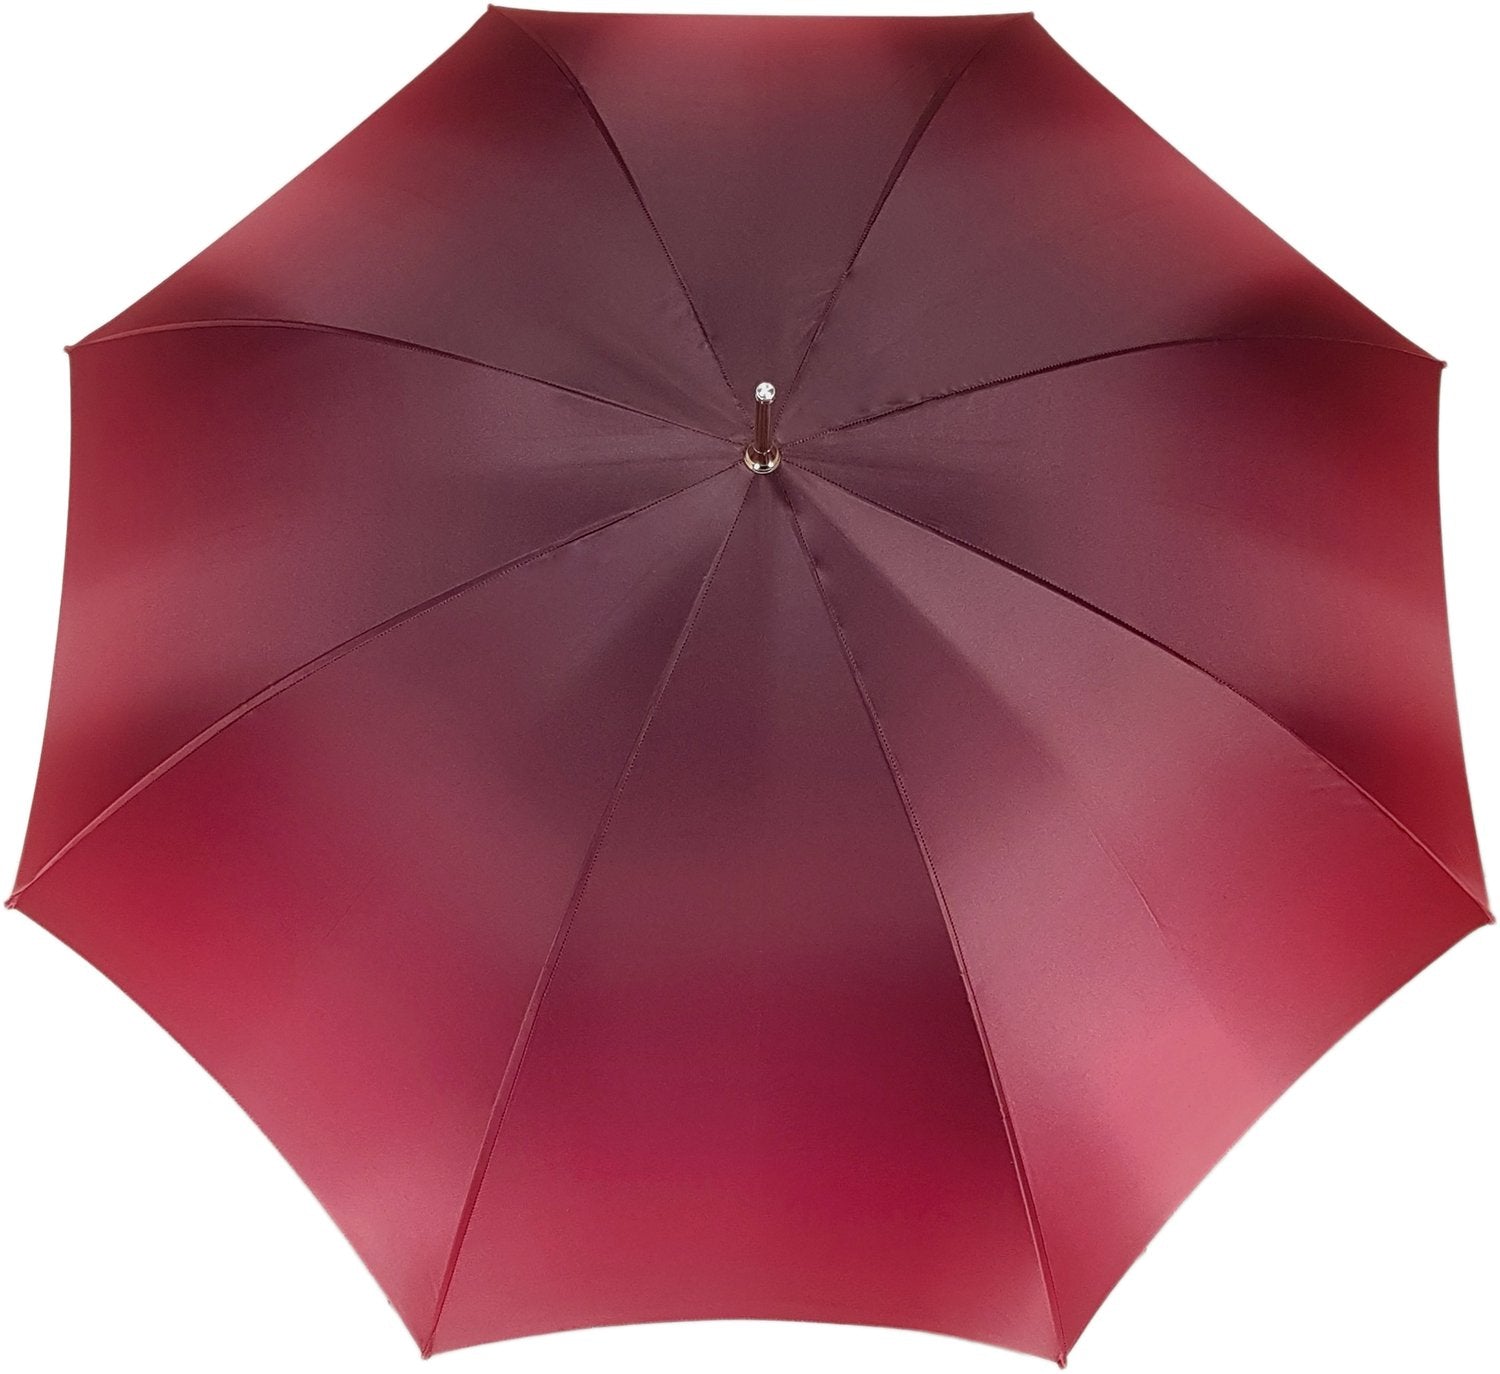 Beautiful Umbrella With Rose Design - il-marchesato